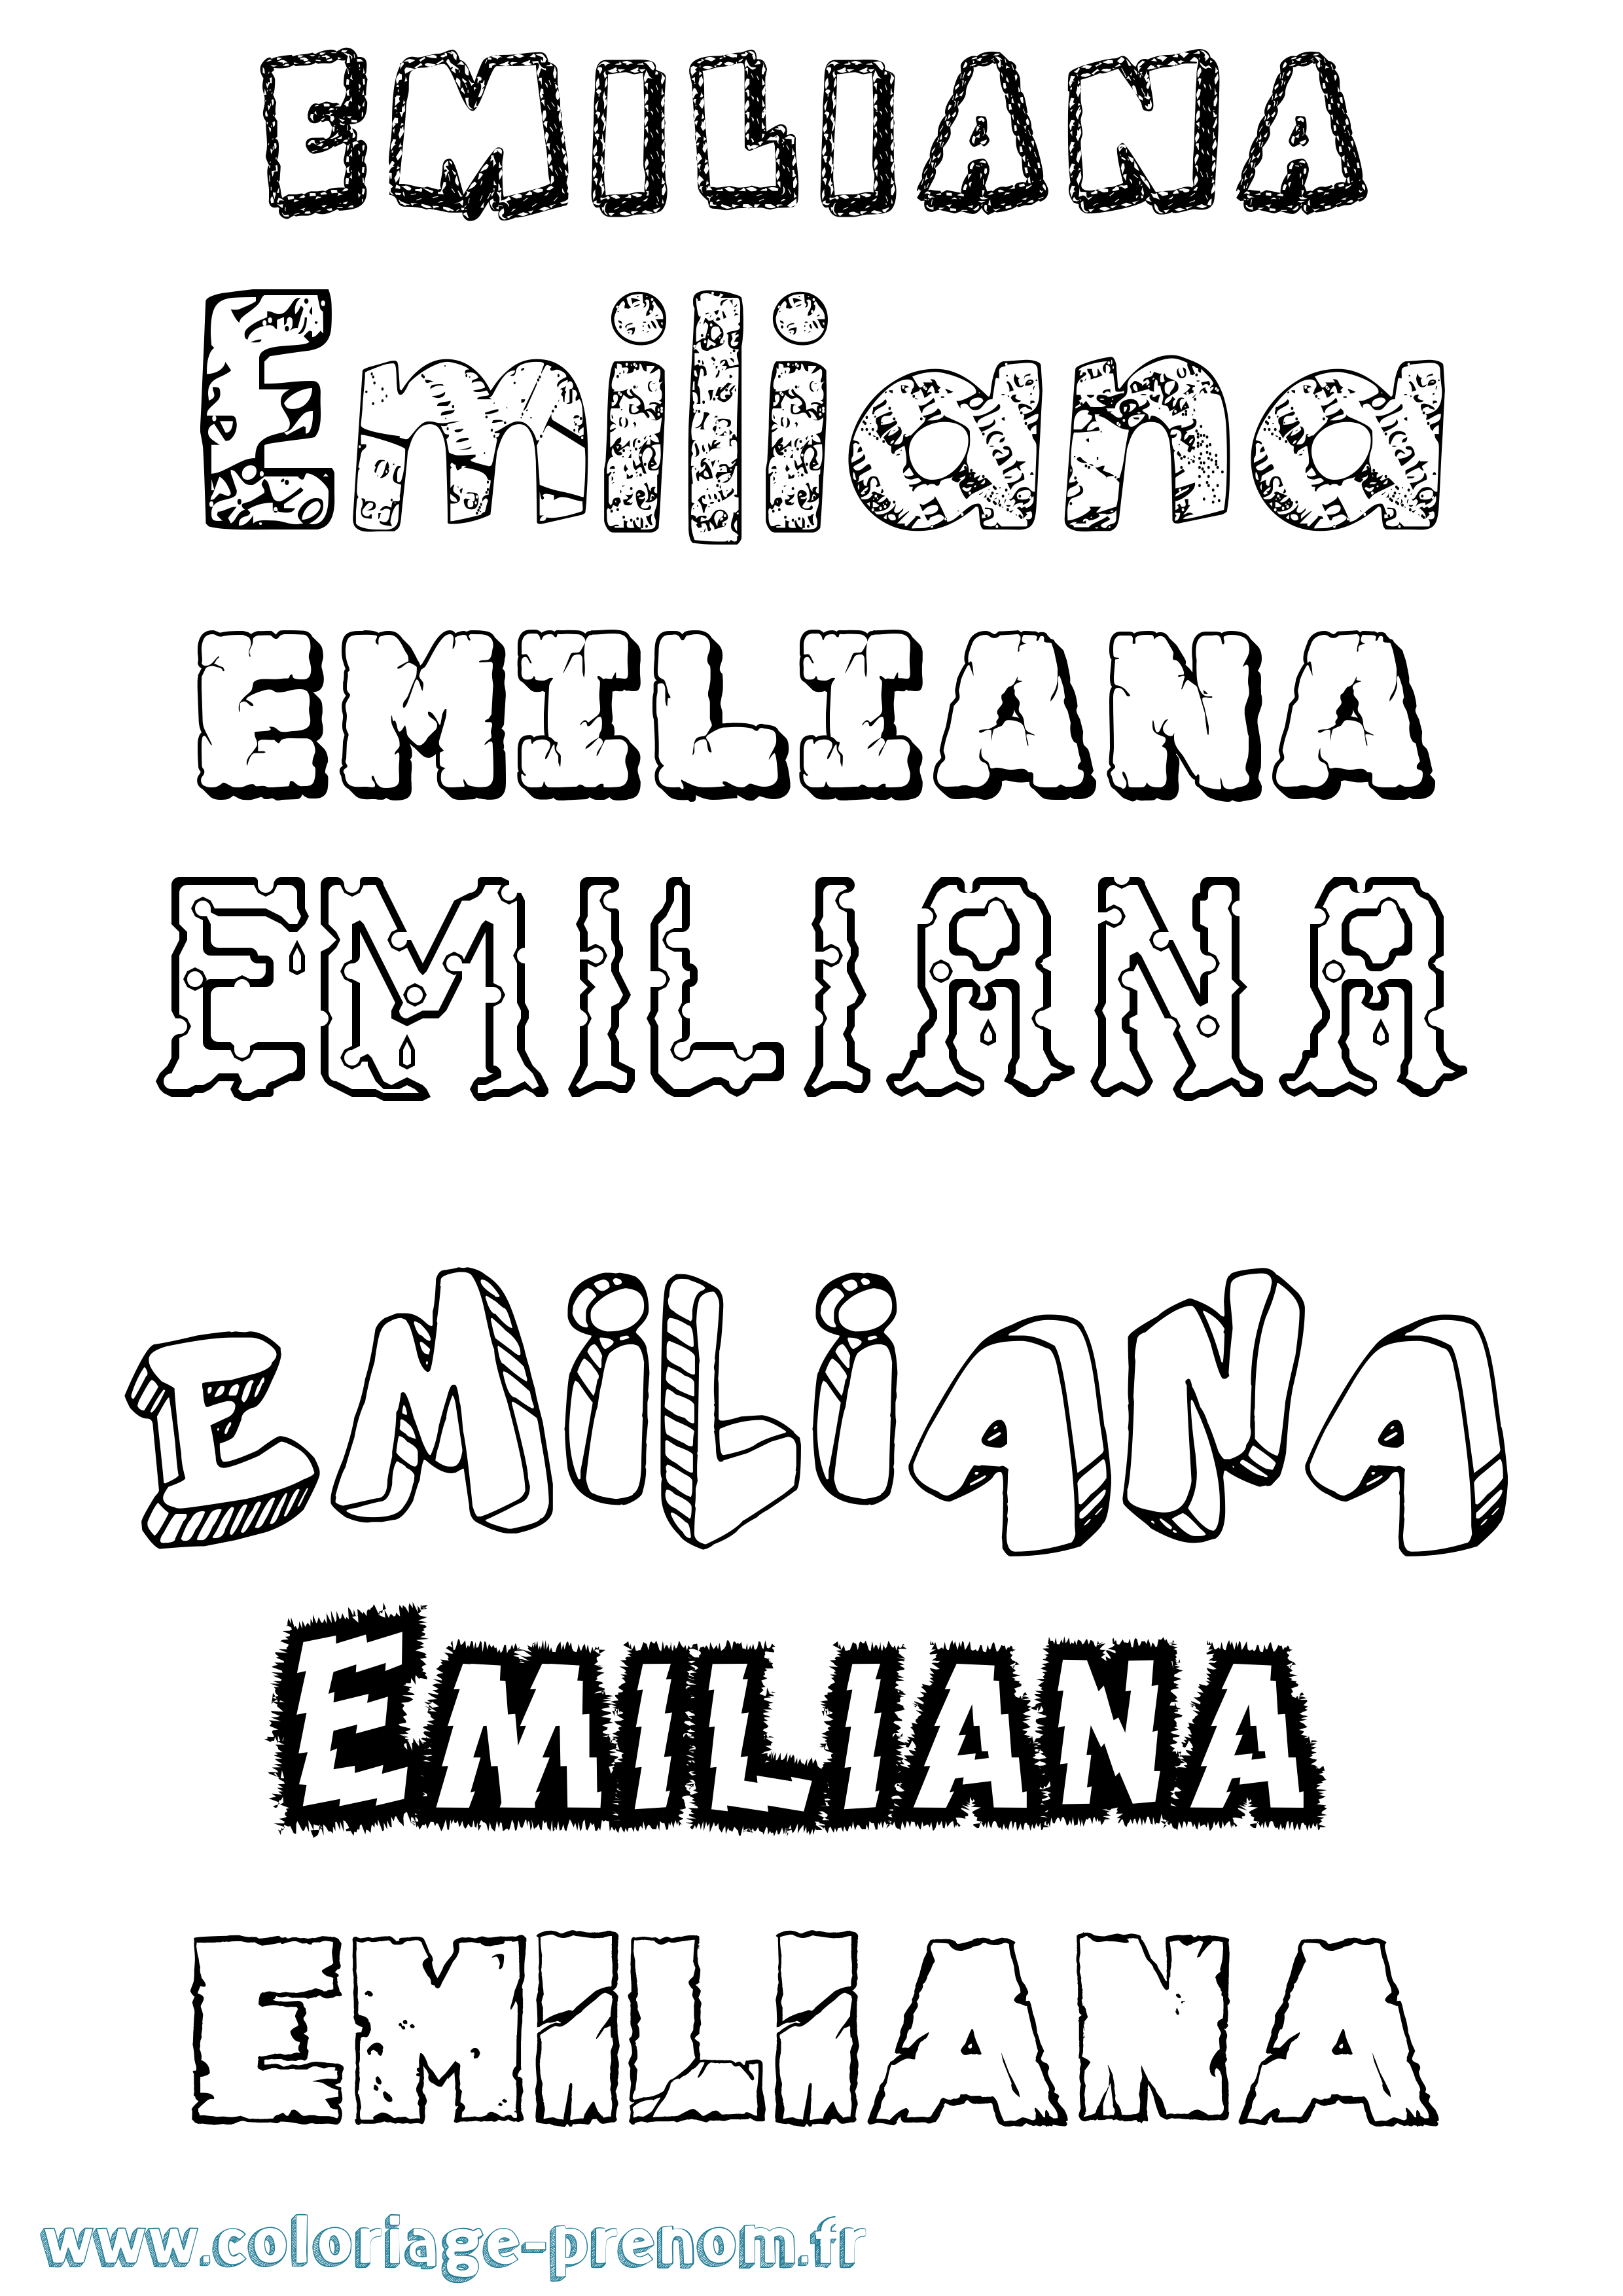 Coloriage prénom Emiliana Destructuré